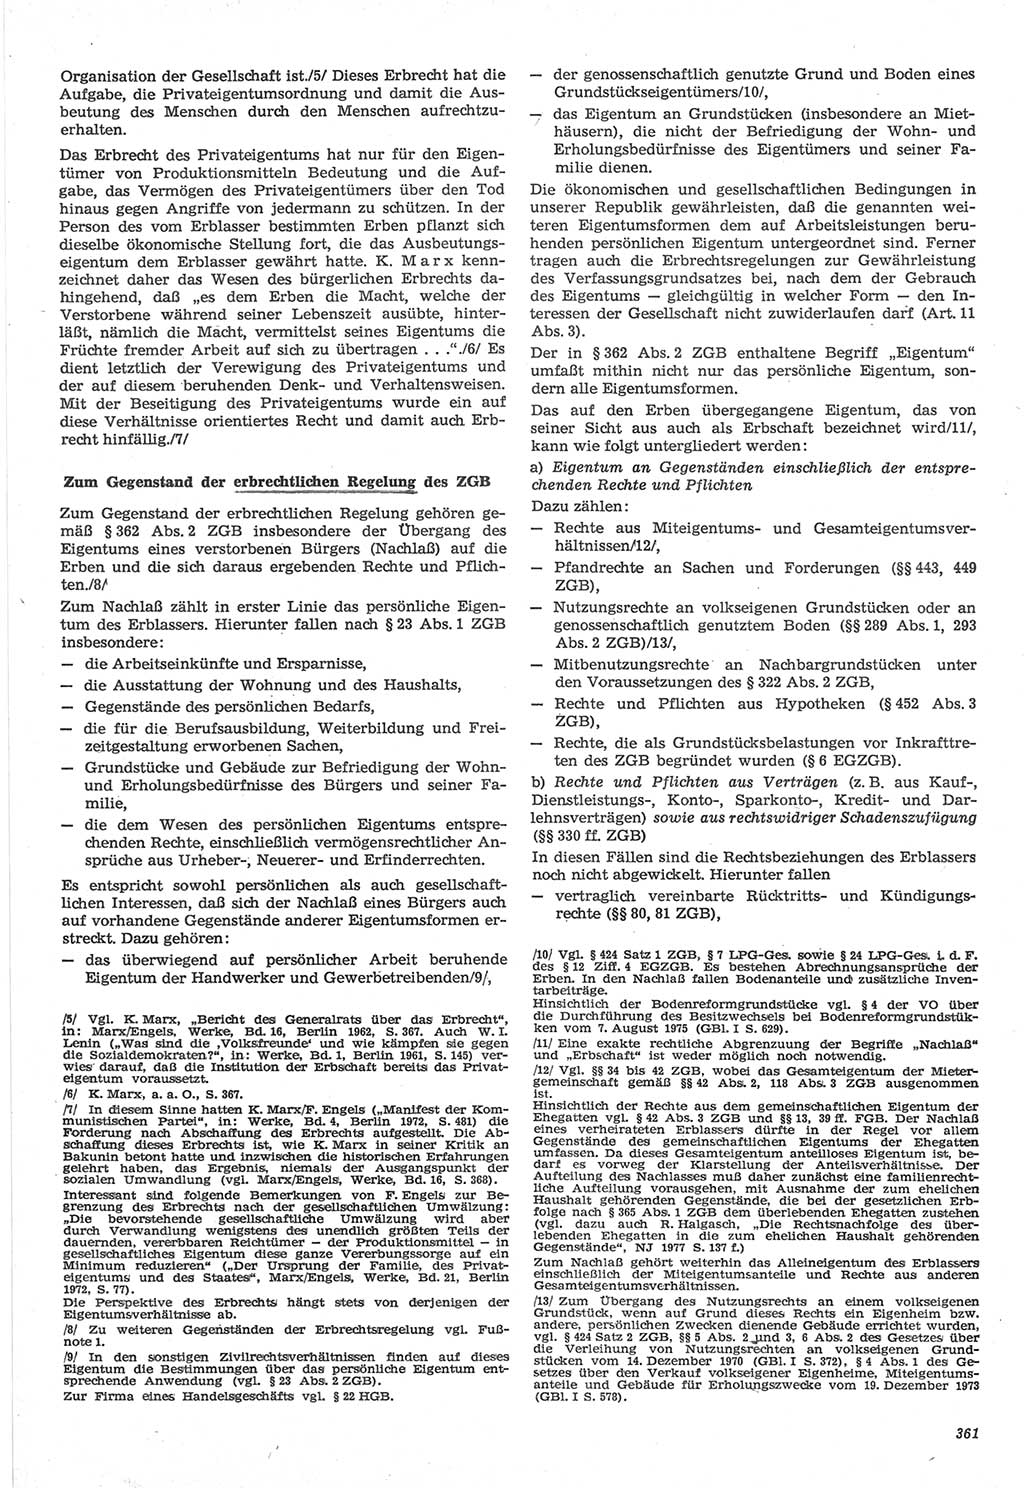 Neue Justiz (NJ), Zeitschrift für Recht und Rechtswissenschaft-Zeitschrift, sozialistisches Recht und Gesetzlichkeit, 31. Jahrgang 1977, Seite 361 (NJ DDR 1977, S. 361)